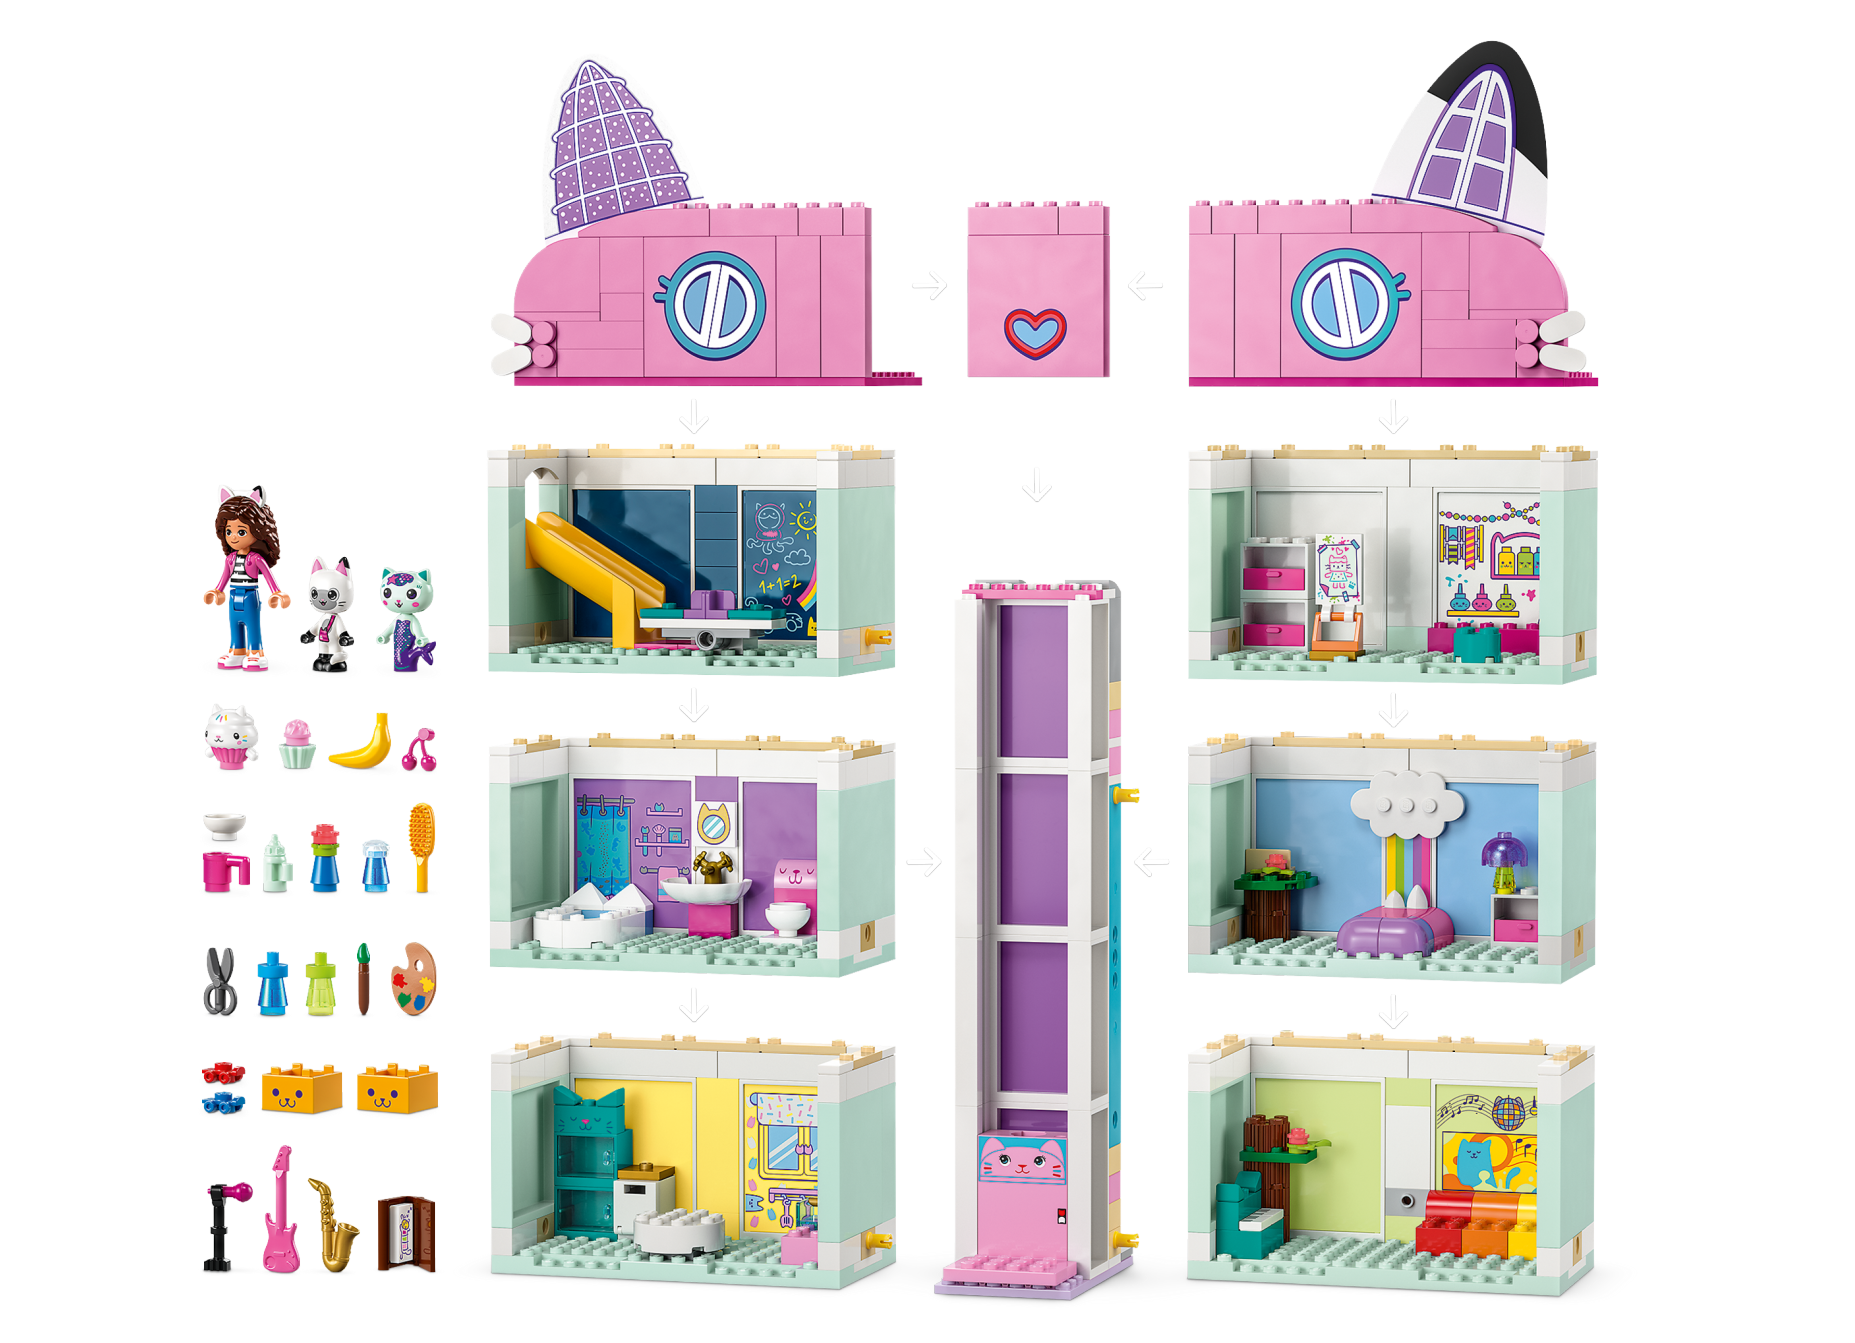 Gabby's Dollhouse 10788, LEGO® Gabby's Dollhouse